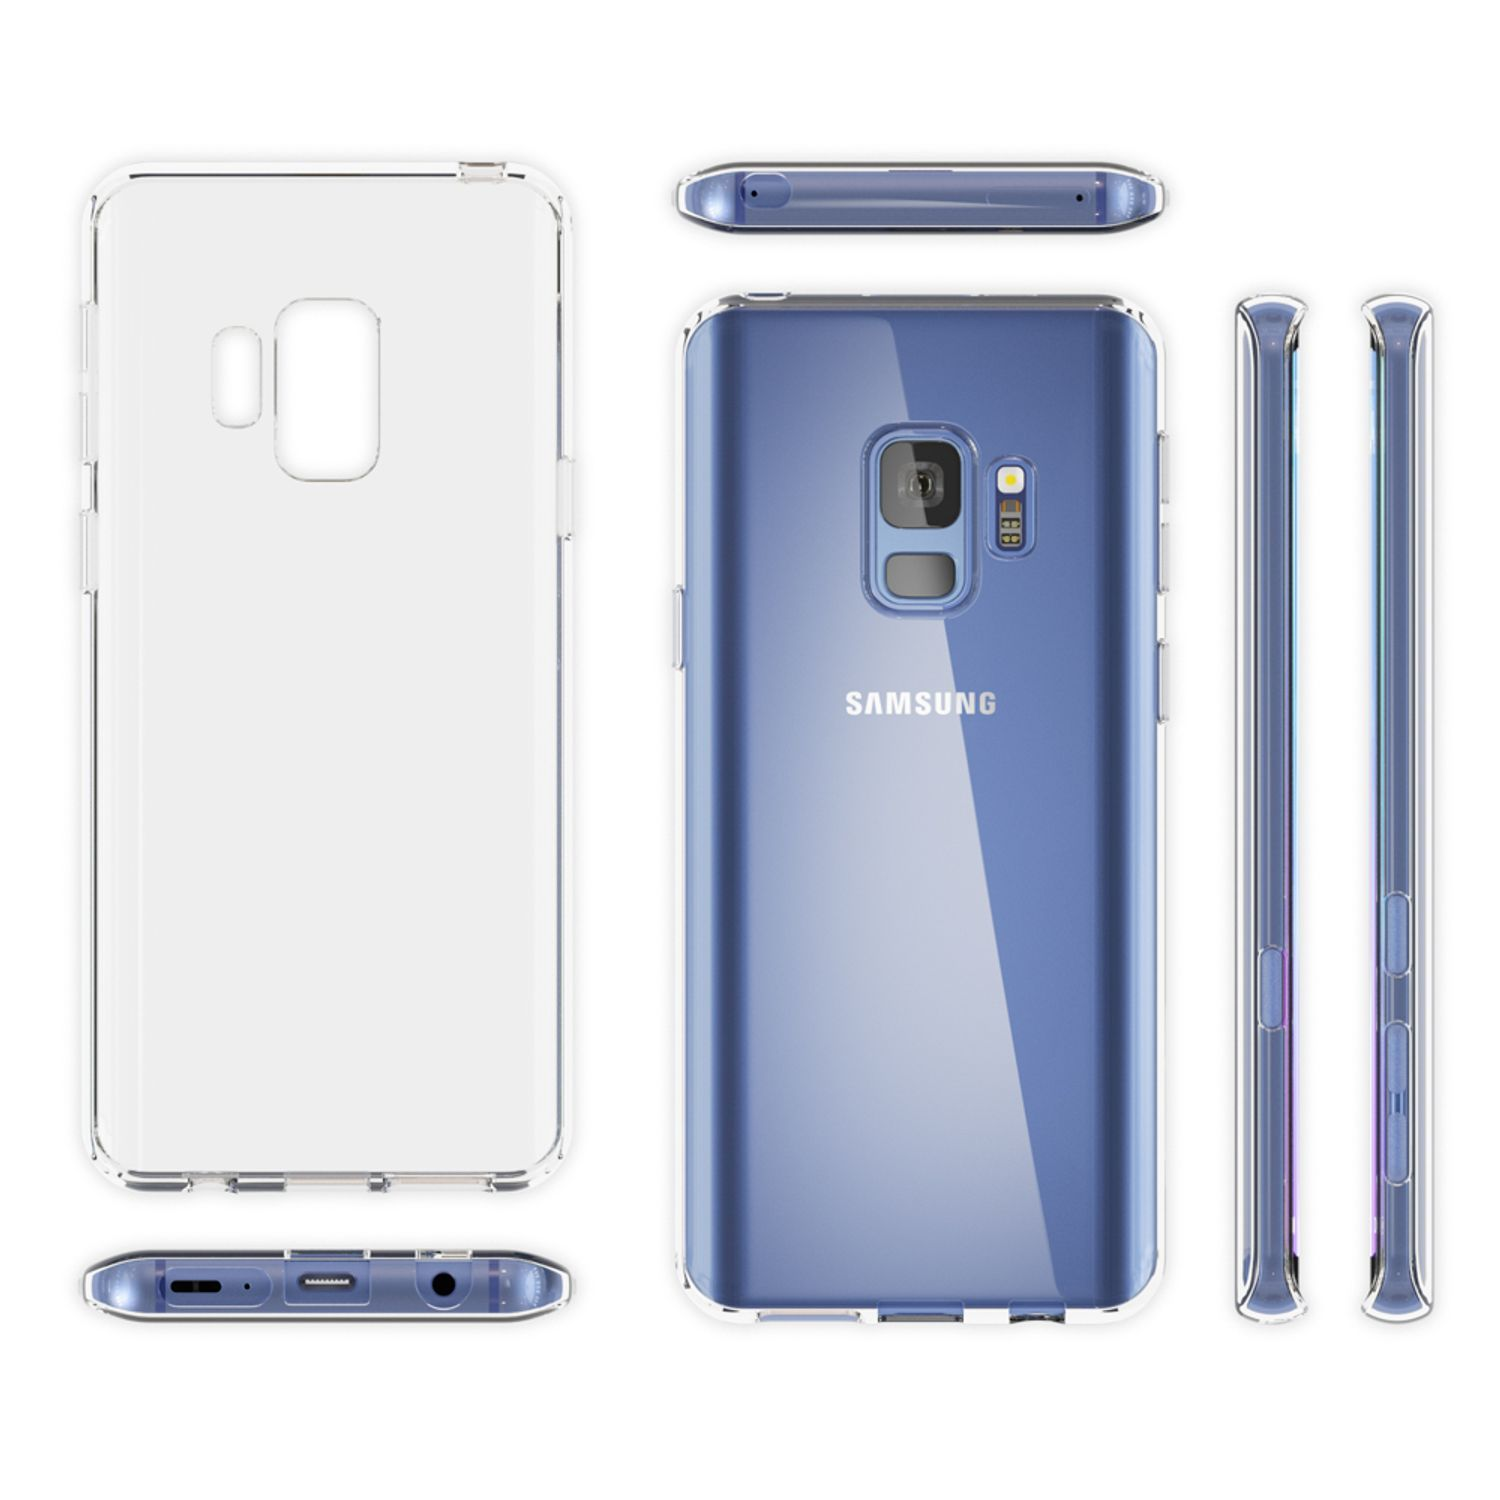 NALIA Motiv Silikon Mehrfarbig S9, Samsung, Galaxy Backcover, Hülle